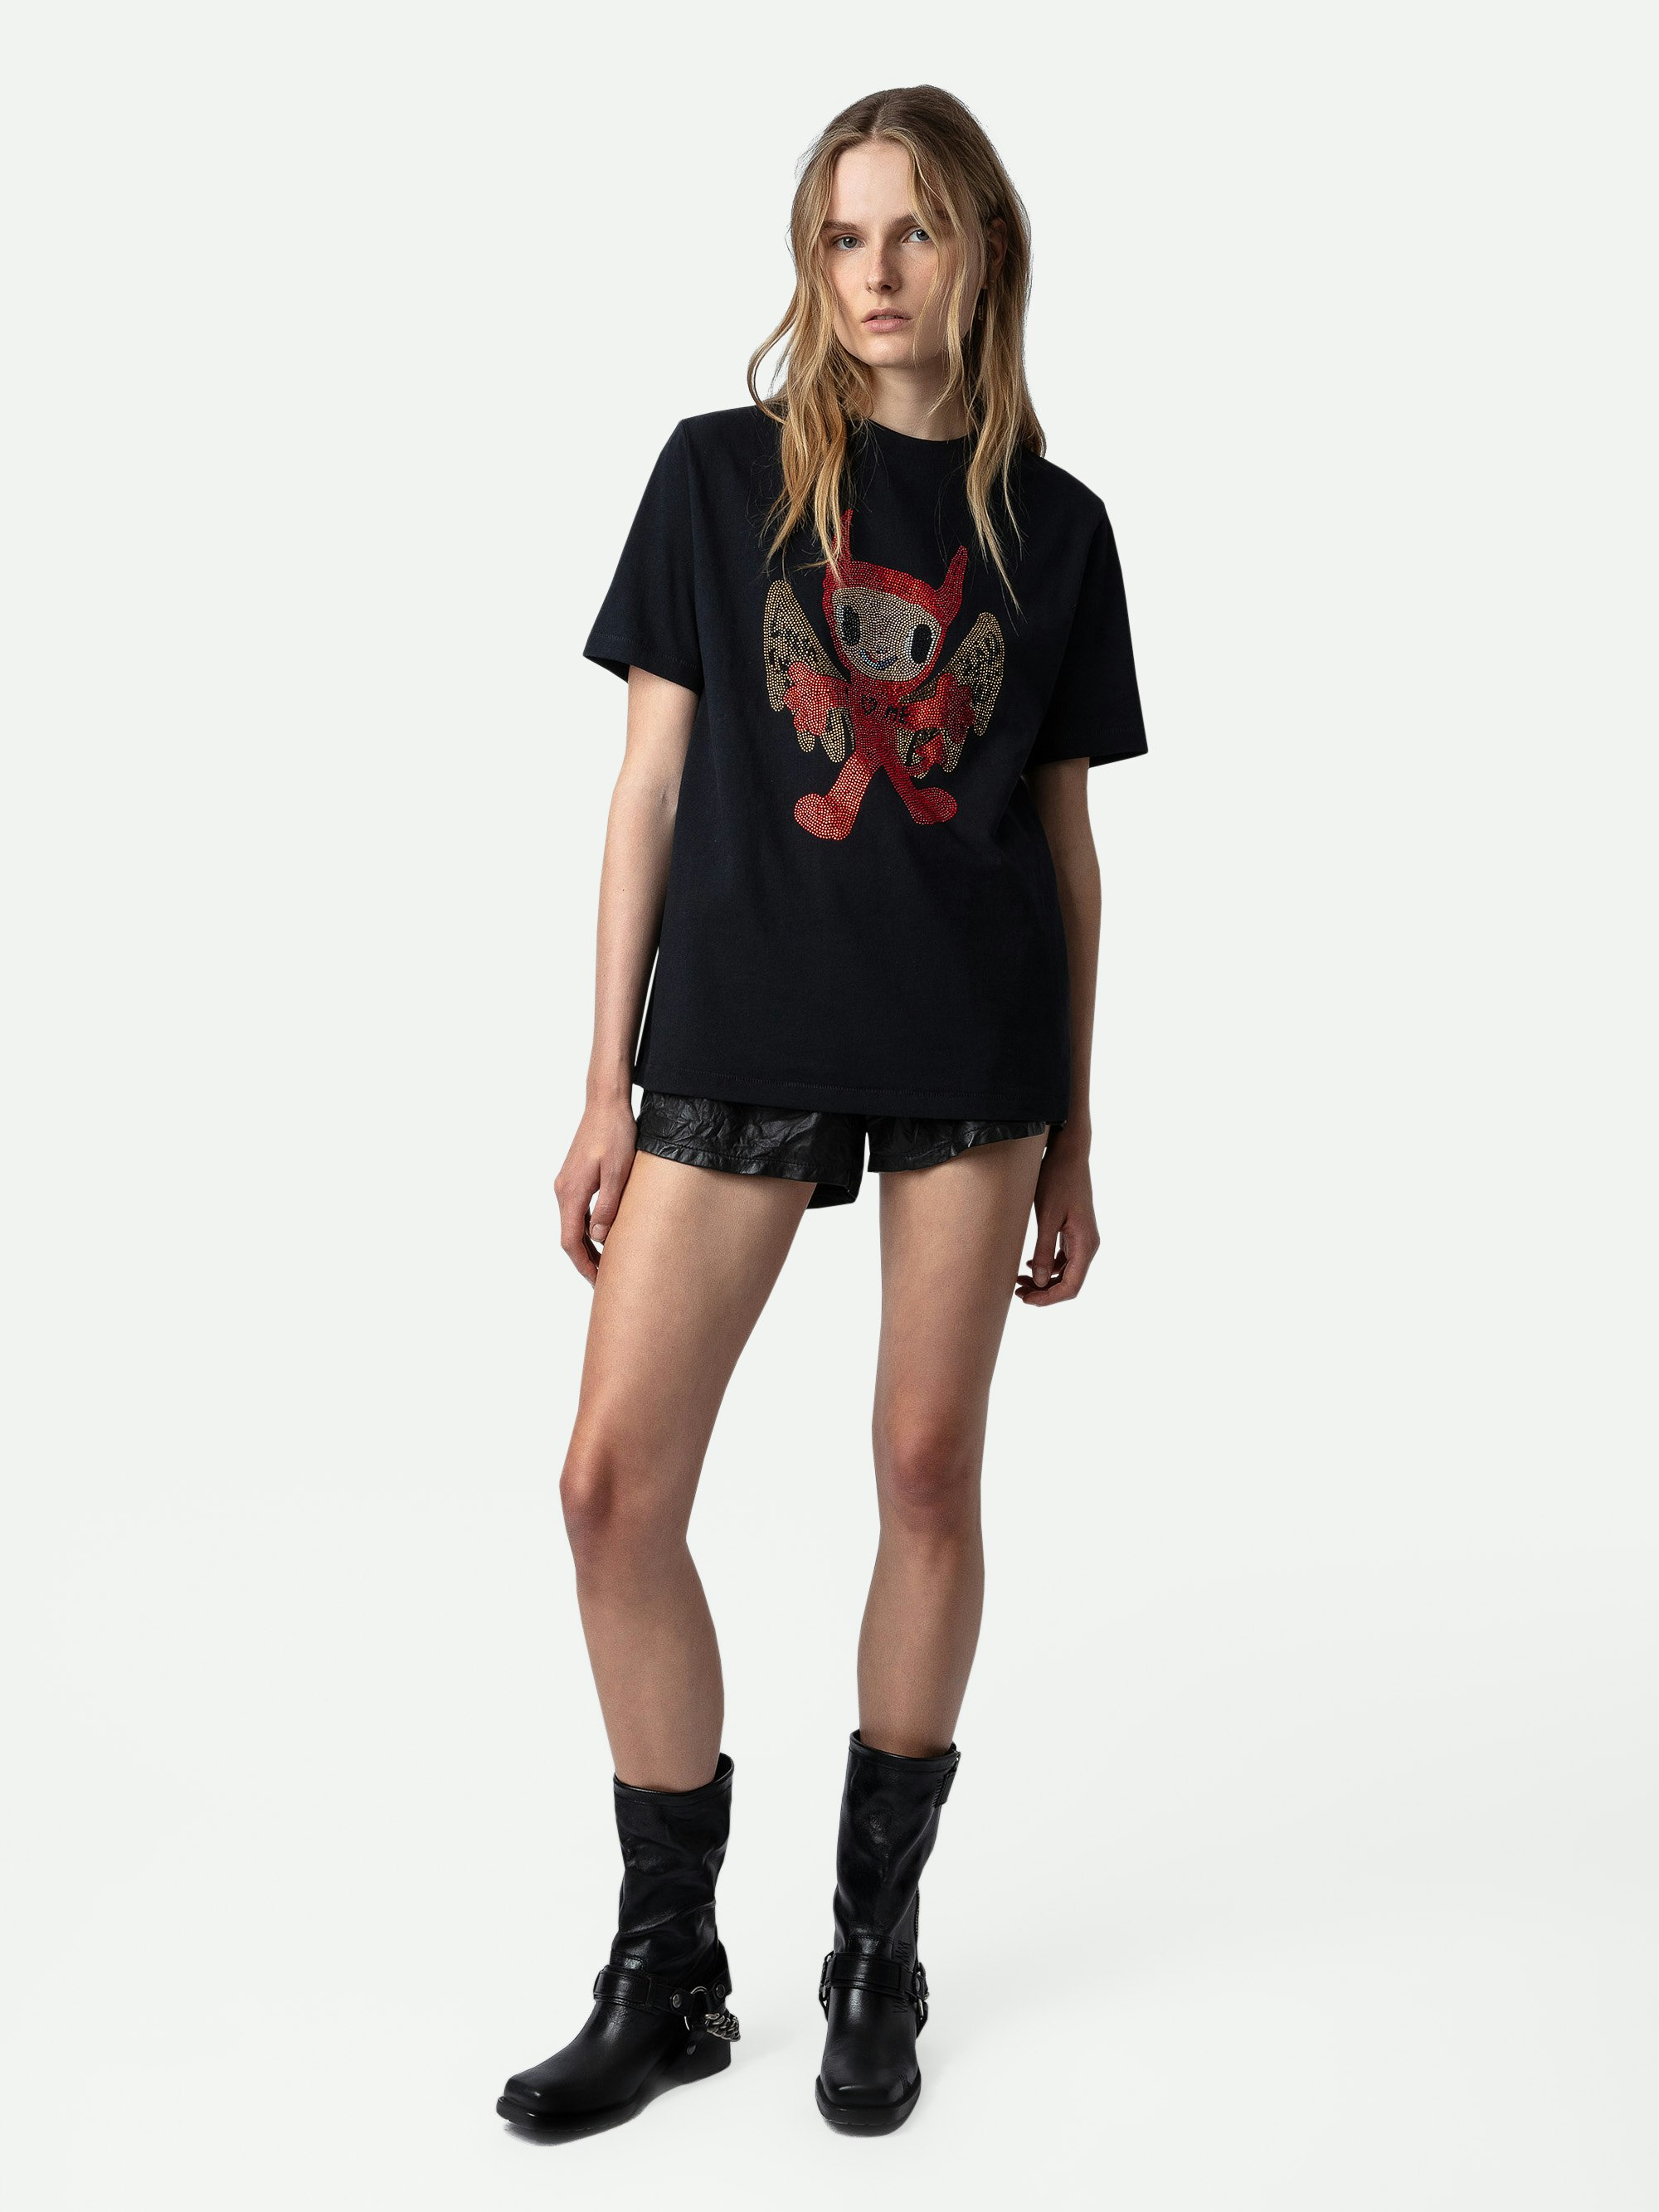 Camiseta Edwin Devil Strass - Camiseta negra de algodón con cuello redondo y mangas cortas, con strass y detalles decorativos de Humberto Cruz.